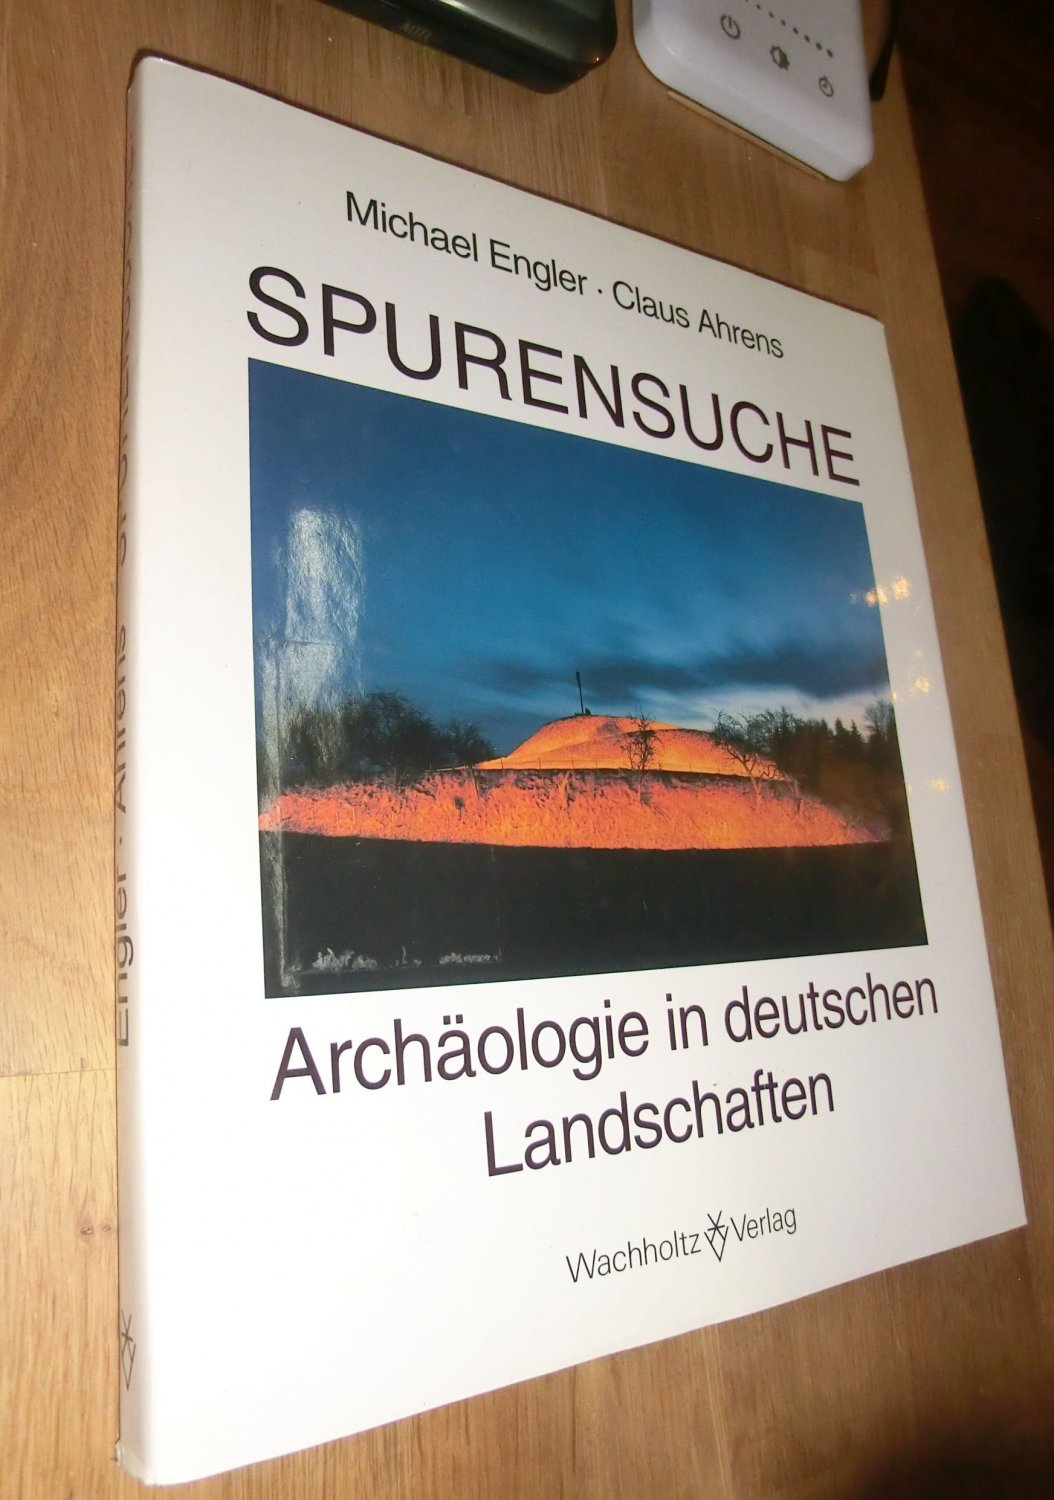 Spurensuche. Archäologie in deutschen Landschaften - Engler, Michael (Photos) und Claus Ahrens (Text)